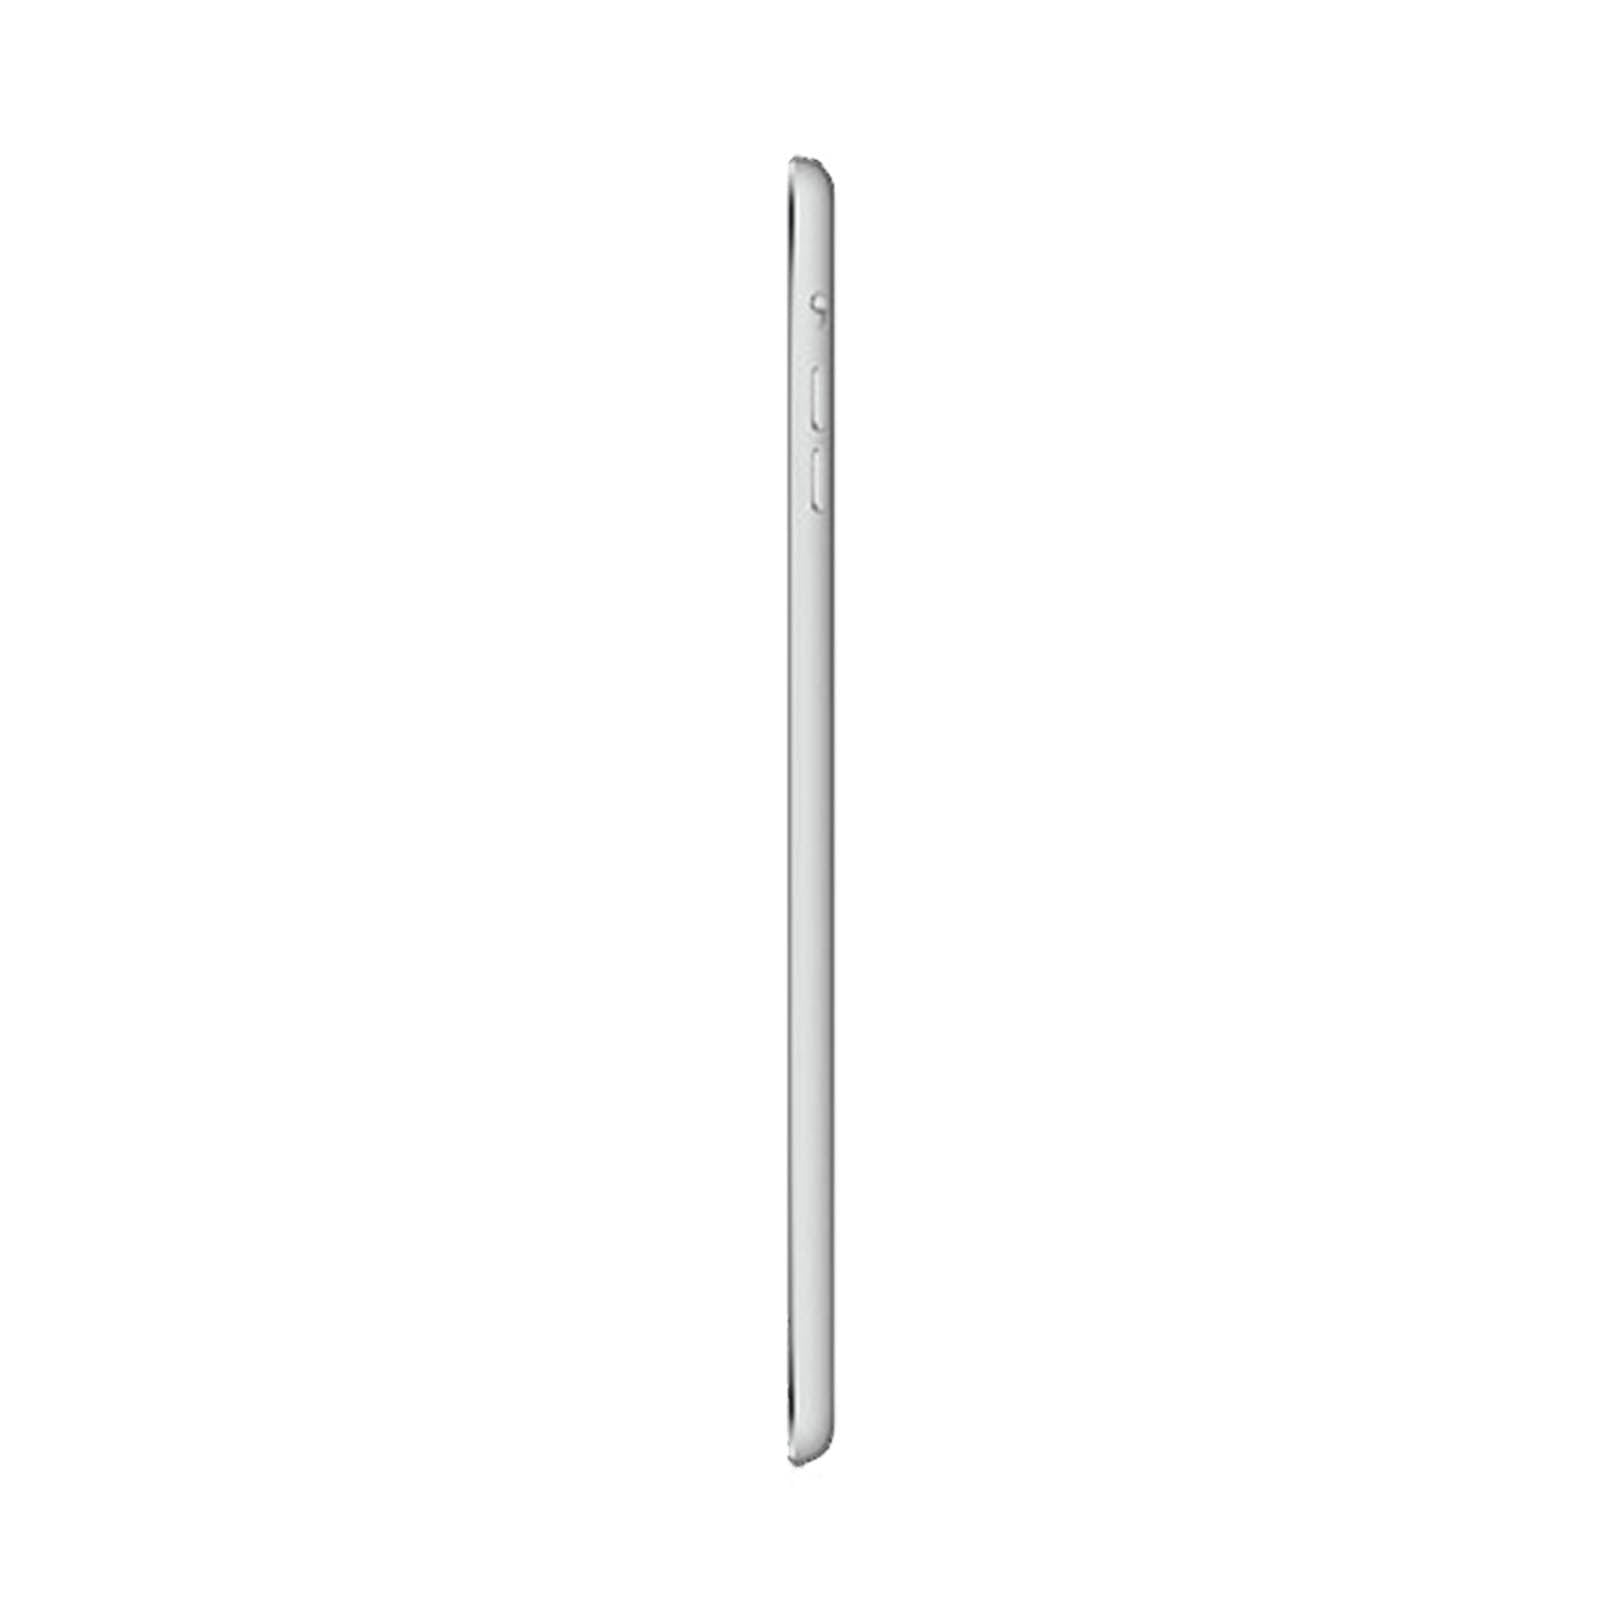 Apple iPad mini 2 128GB White Fair - Unlocked